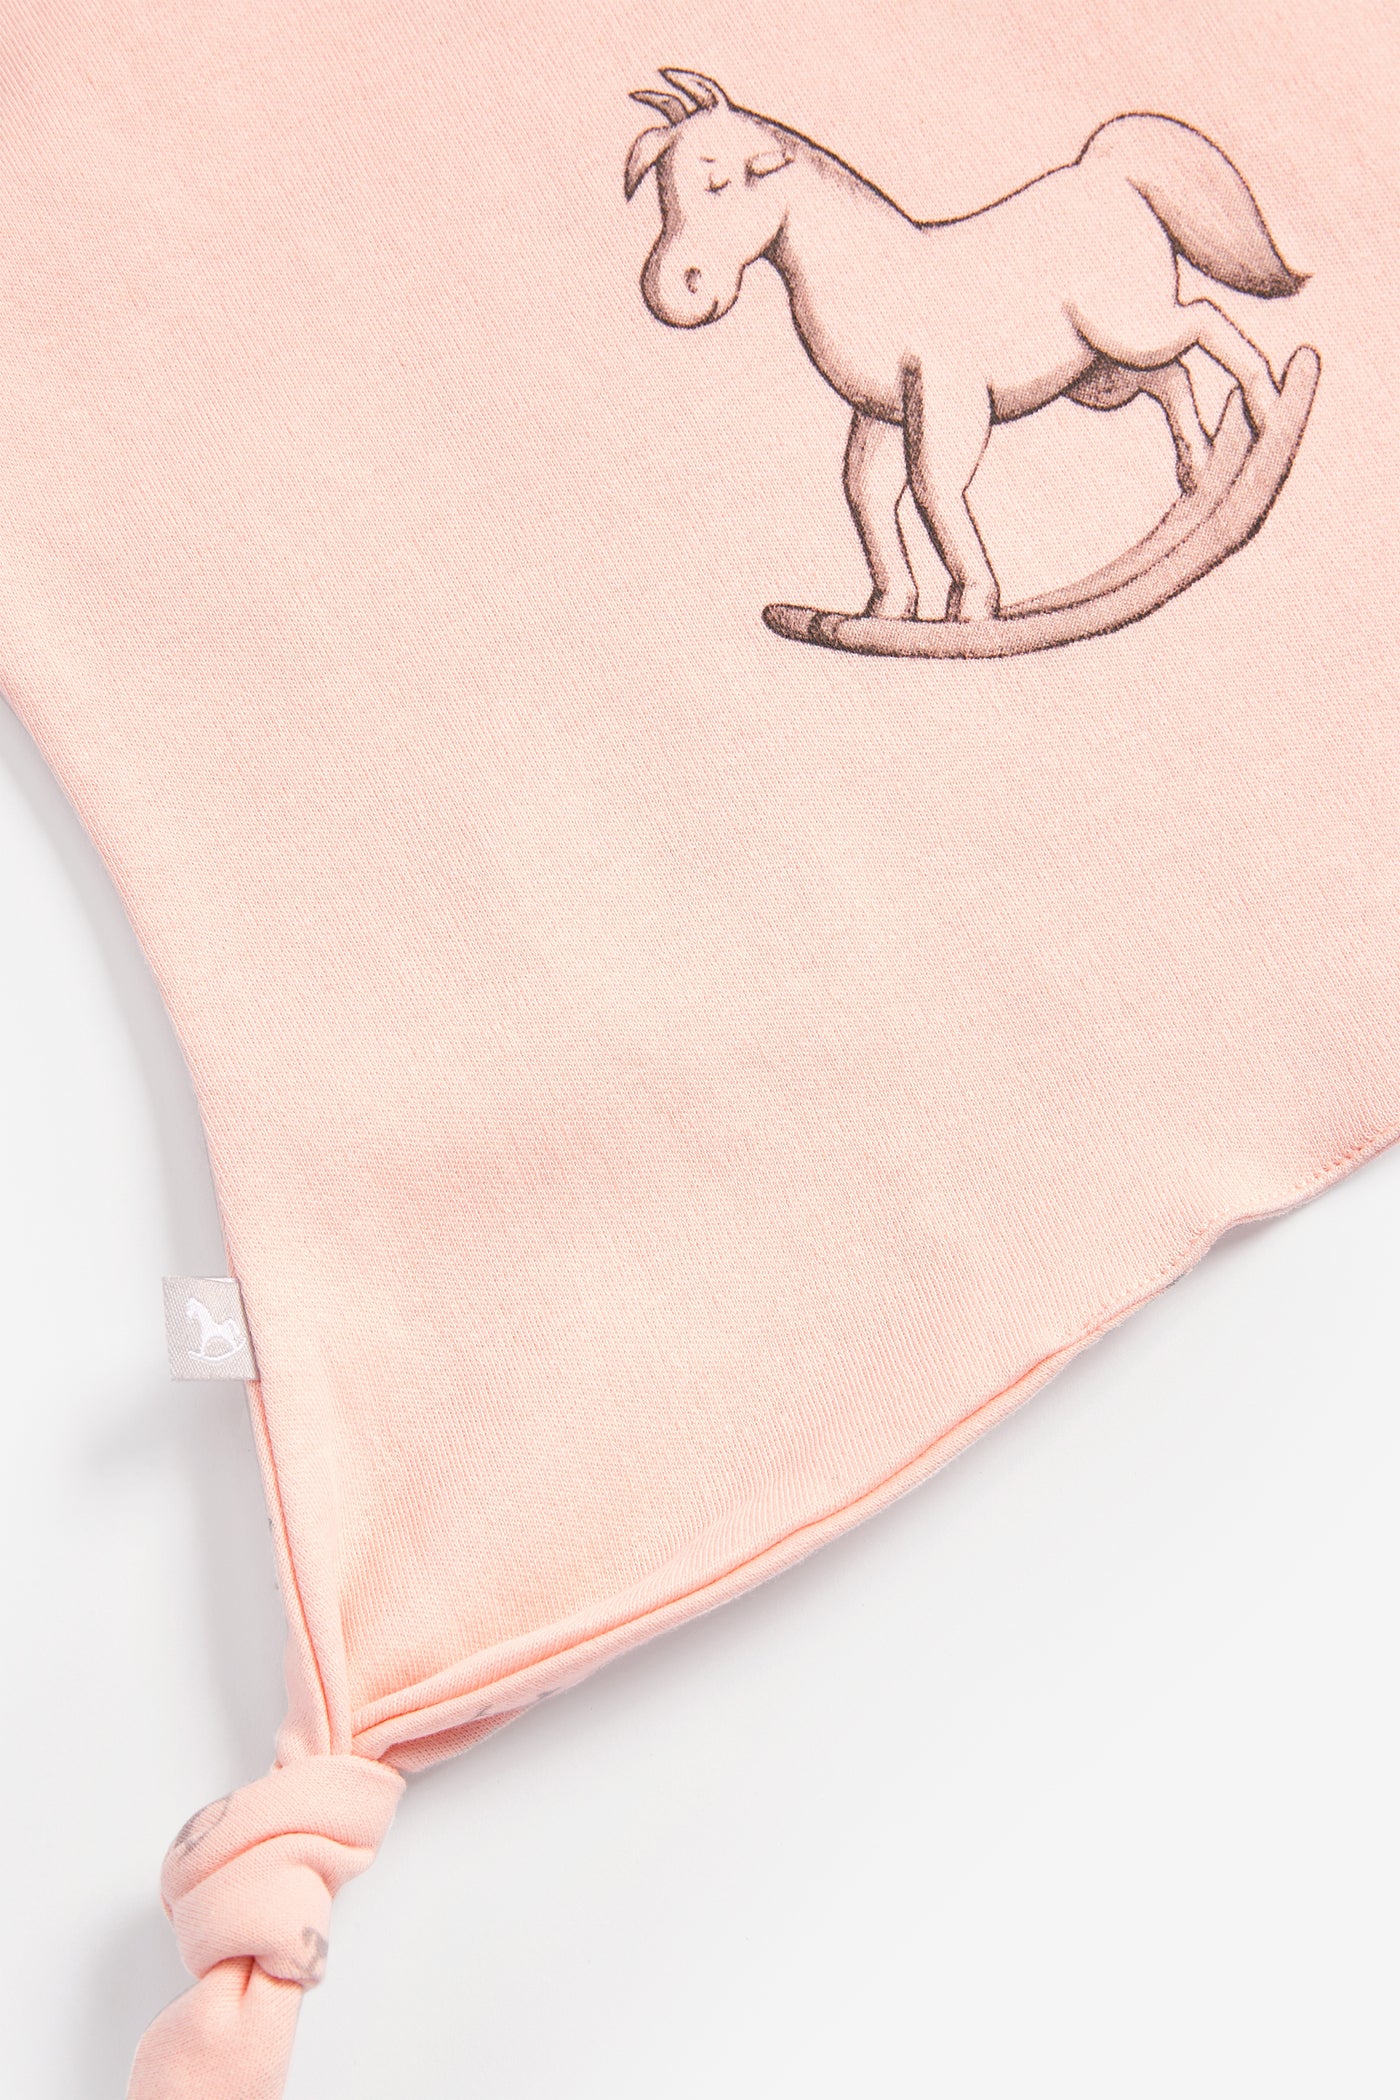 Super Soft Rocking Horse Comforter - pink